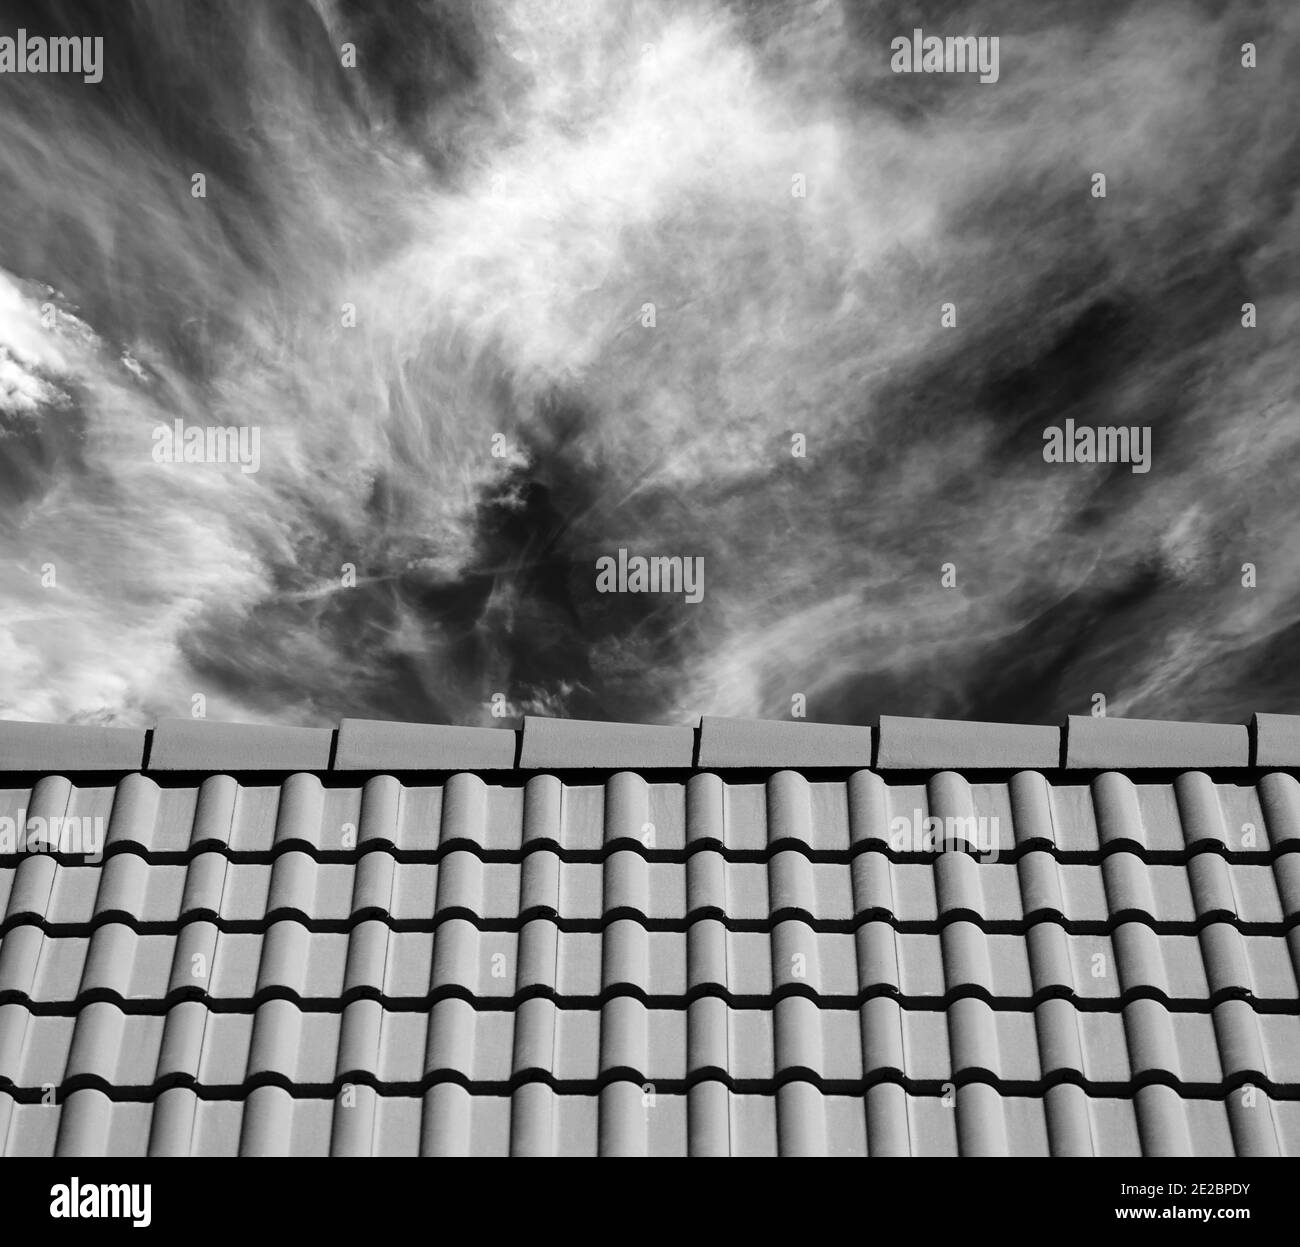 Dachziegel und Himmel mit Wolken am Sonnentag. Schwarzweißbild. Stockfoto